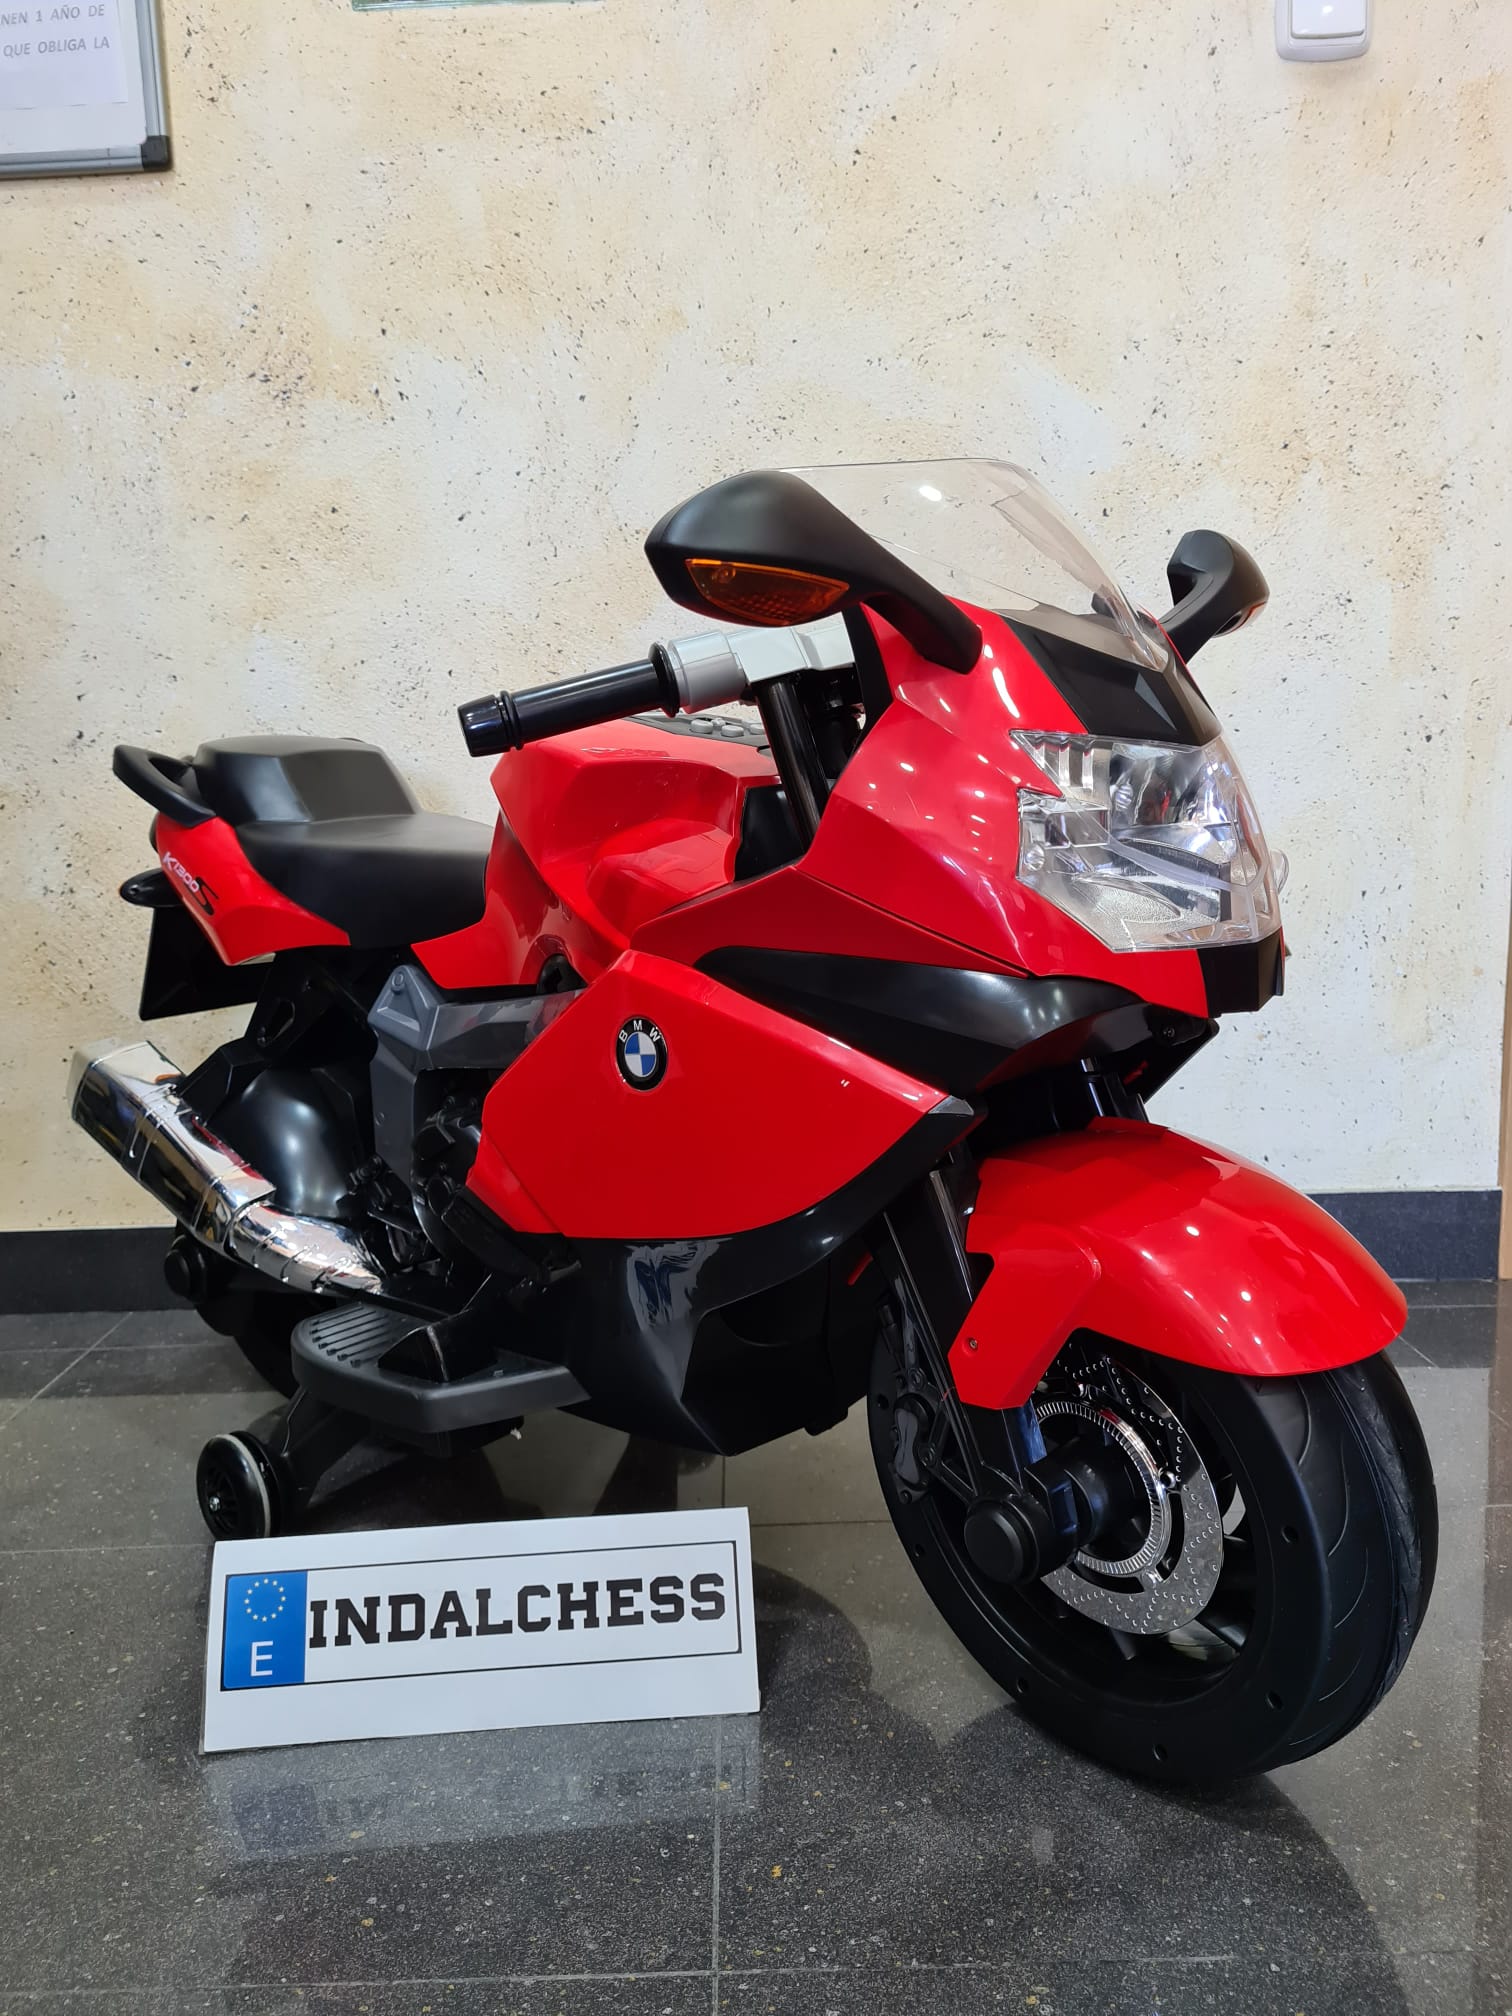 Moto para Niños Tourer K1200 Roja de Batería